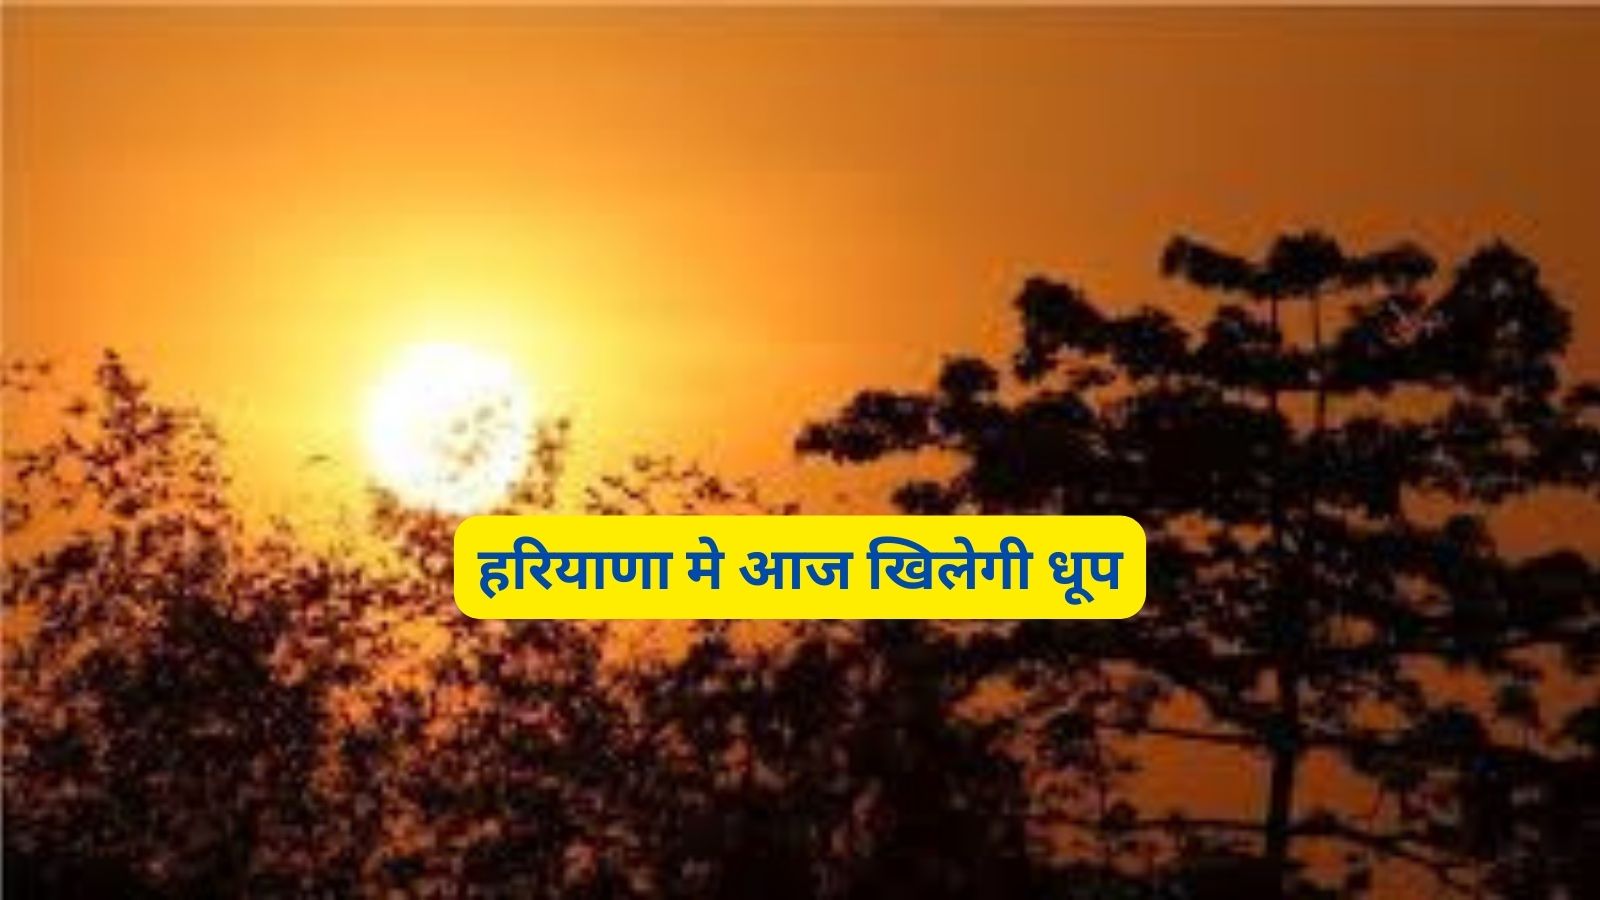 Haryana Weather Update : हरियाणा मे आज खिलेगी धूप,जानिए मौसम का हाल